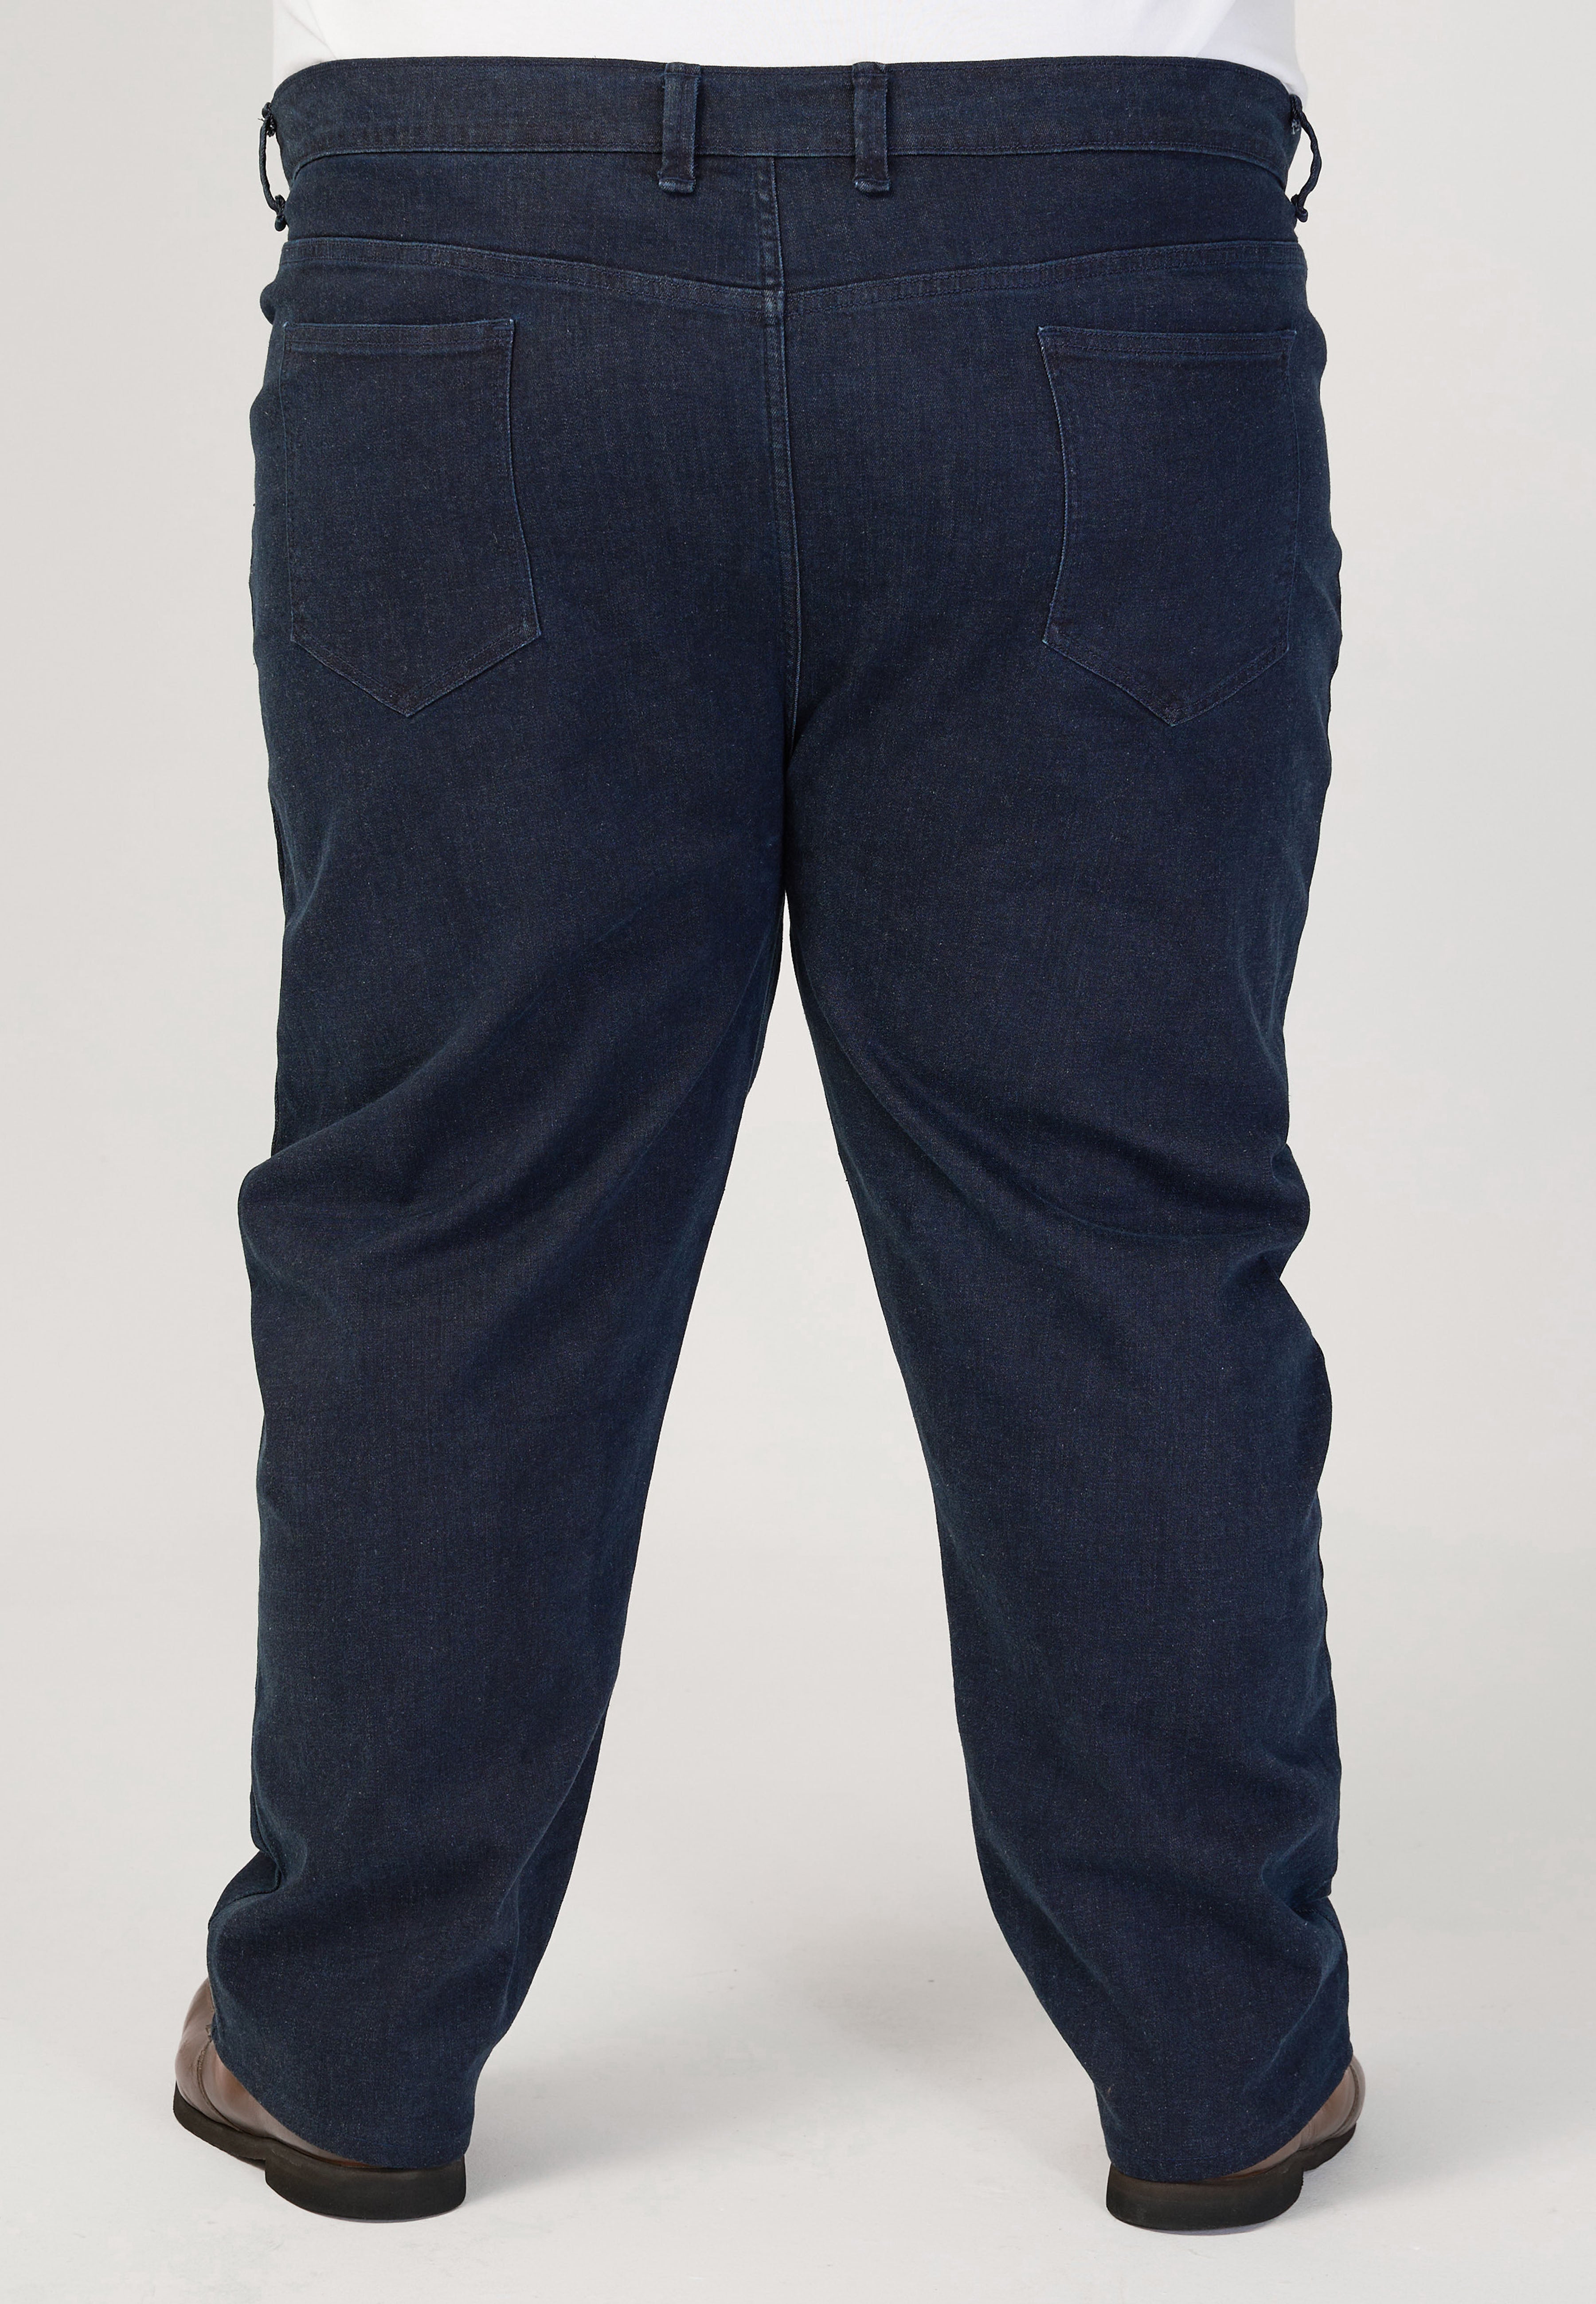 Plus Size Jeans #8341 | Plus Size Stretchable Jeans